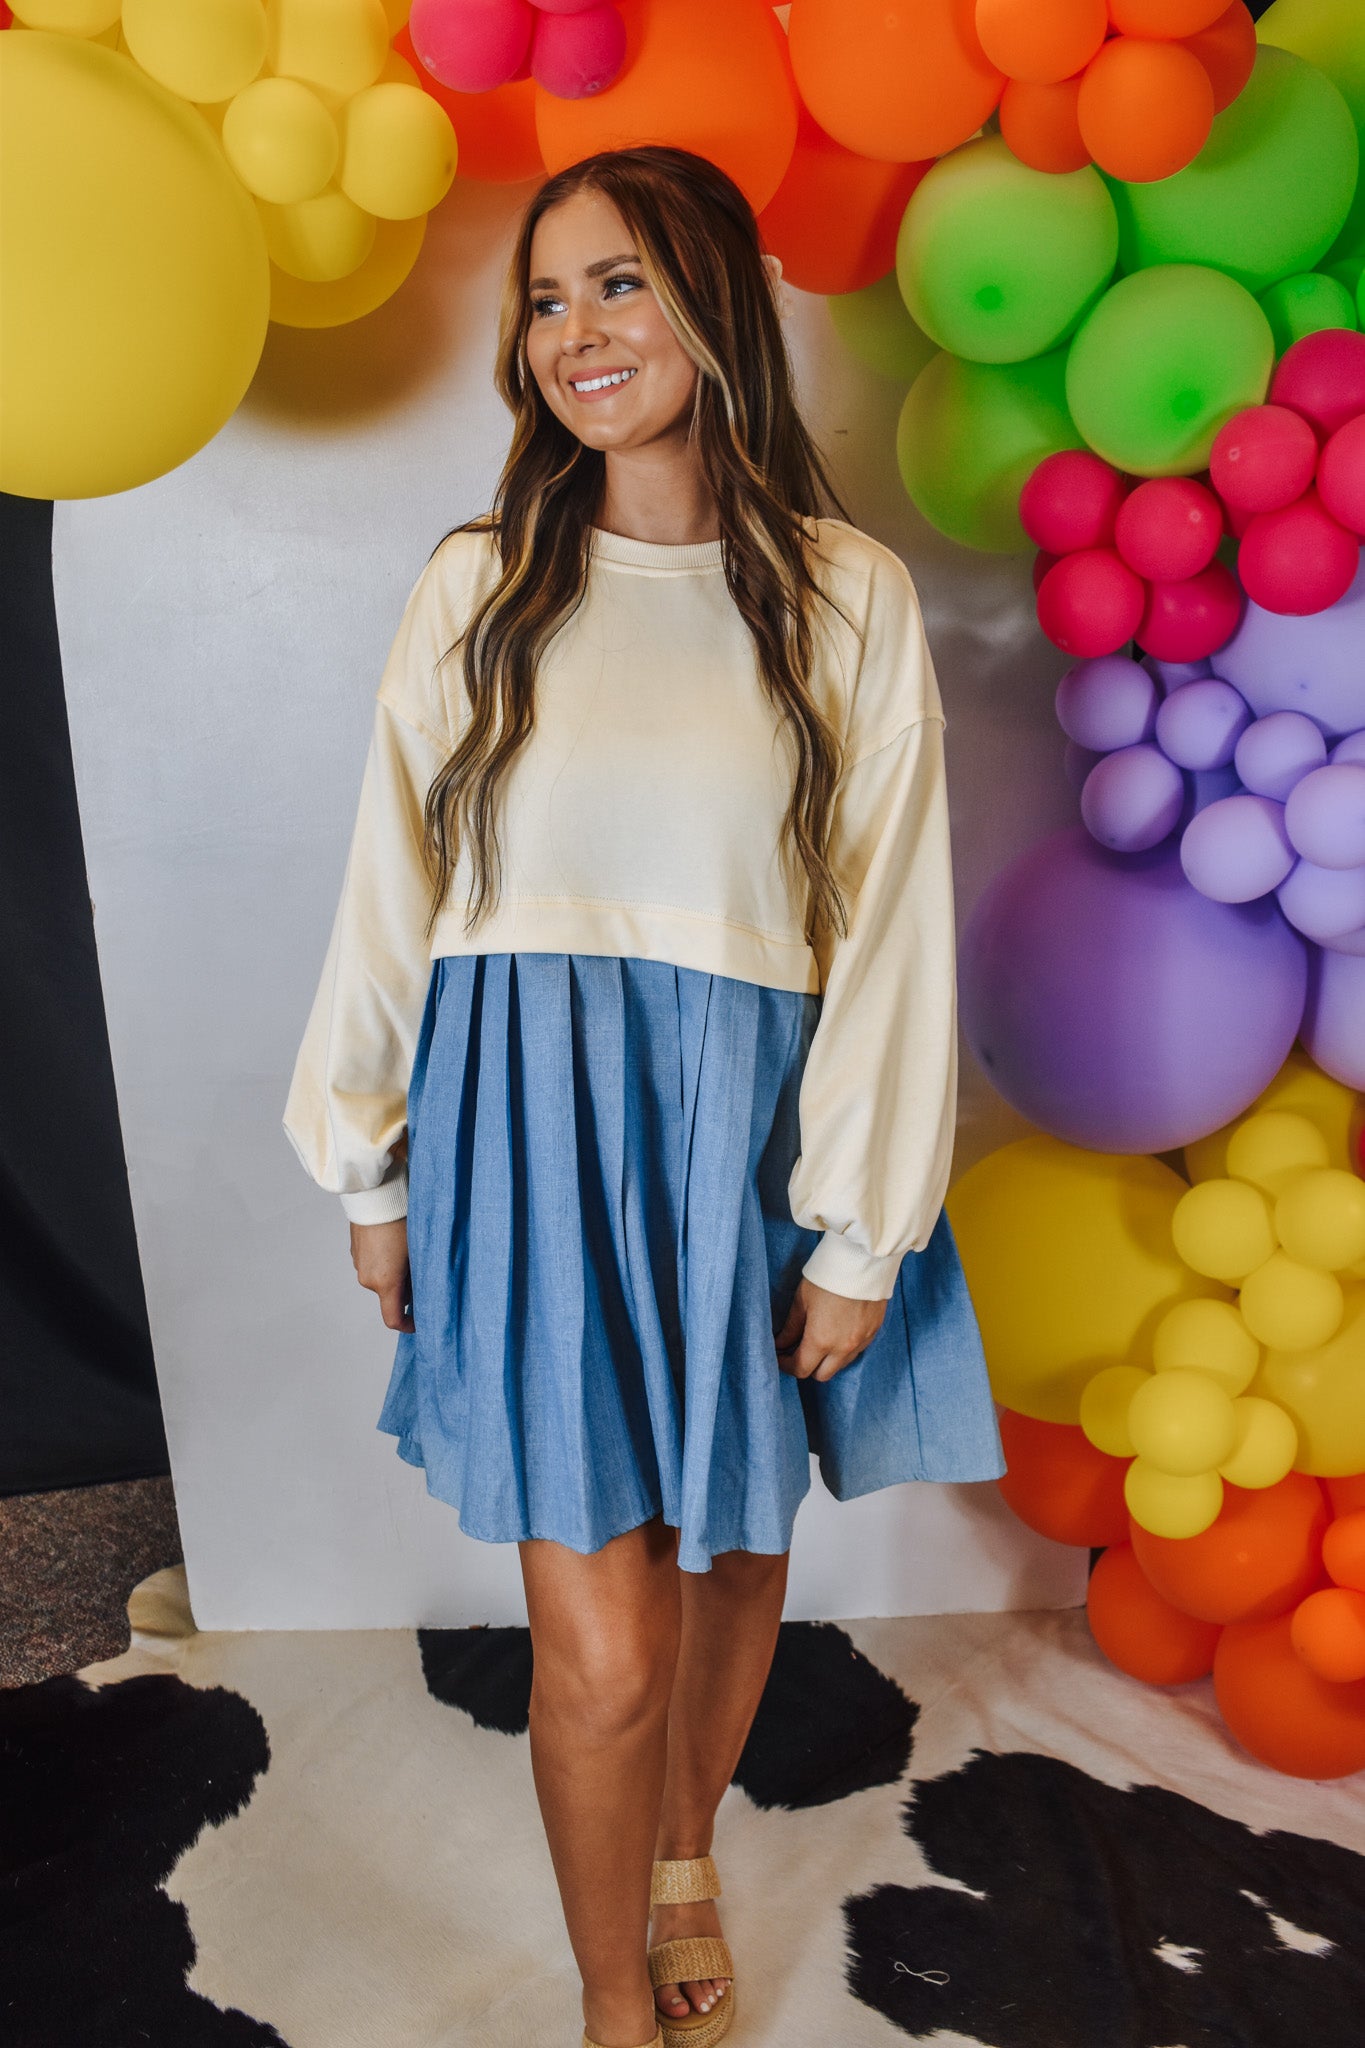 Ecru Sweatshirt Dress in Colorful Styling